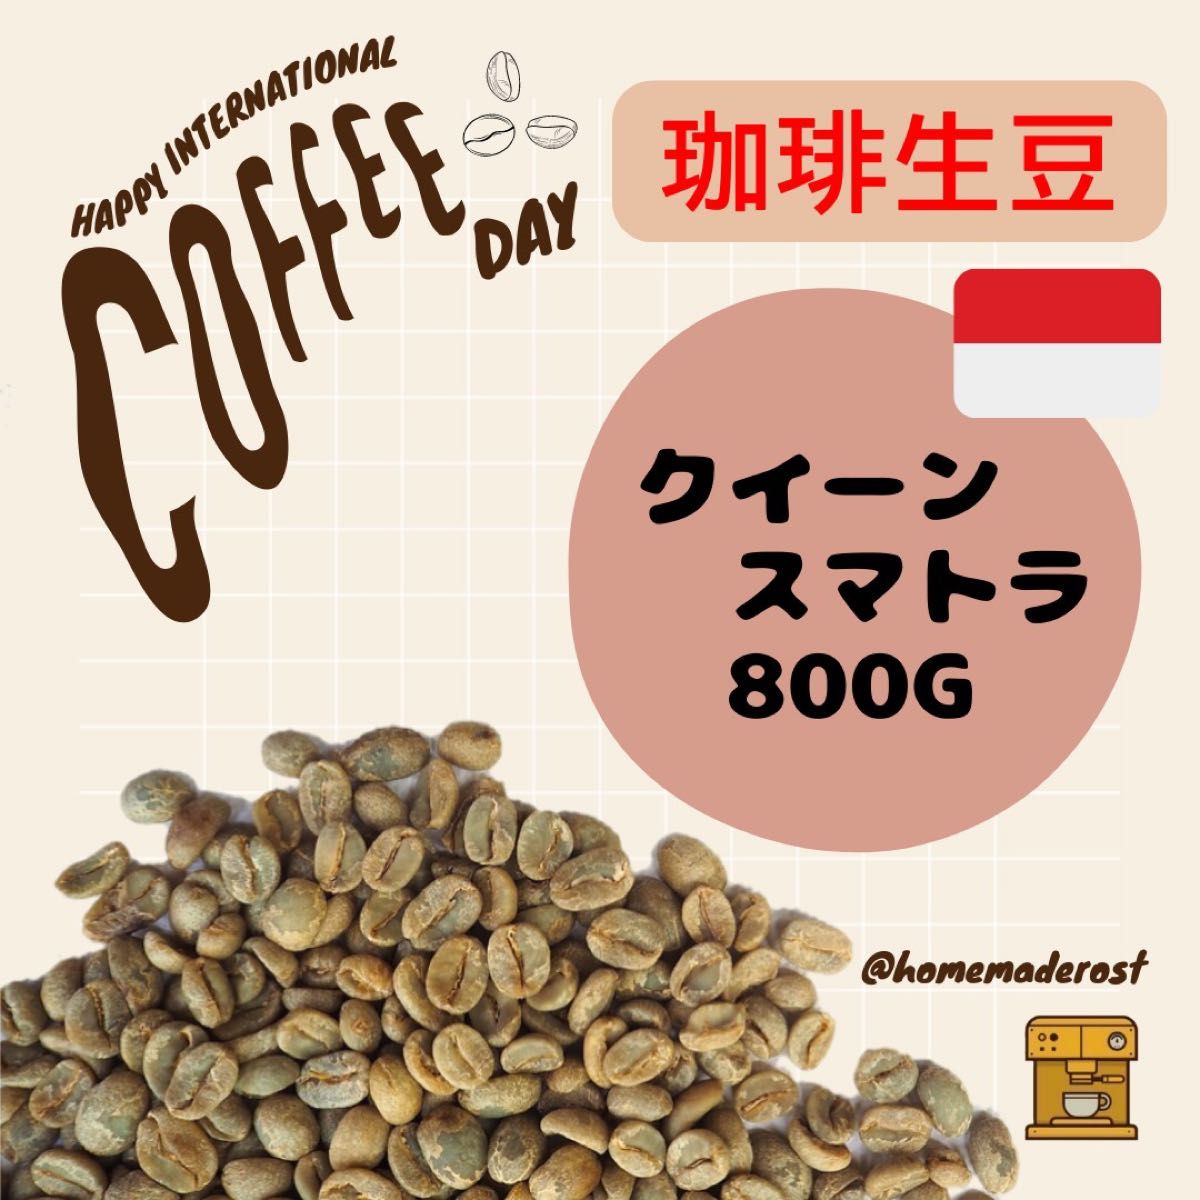 コーヒー生豆】マンデリンG1 インドネシア 10kg ※送料無料!-